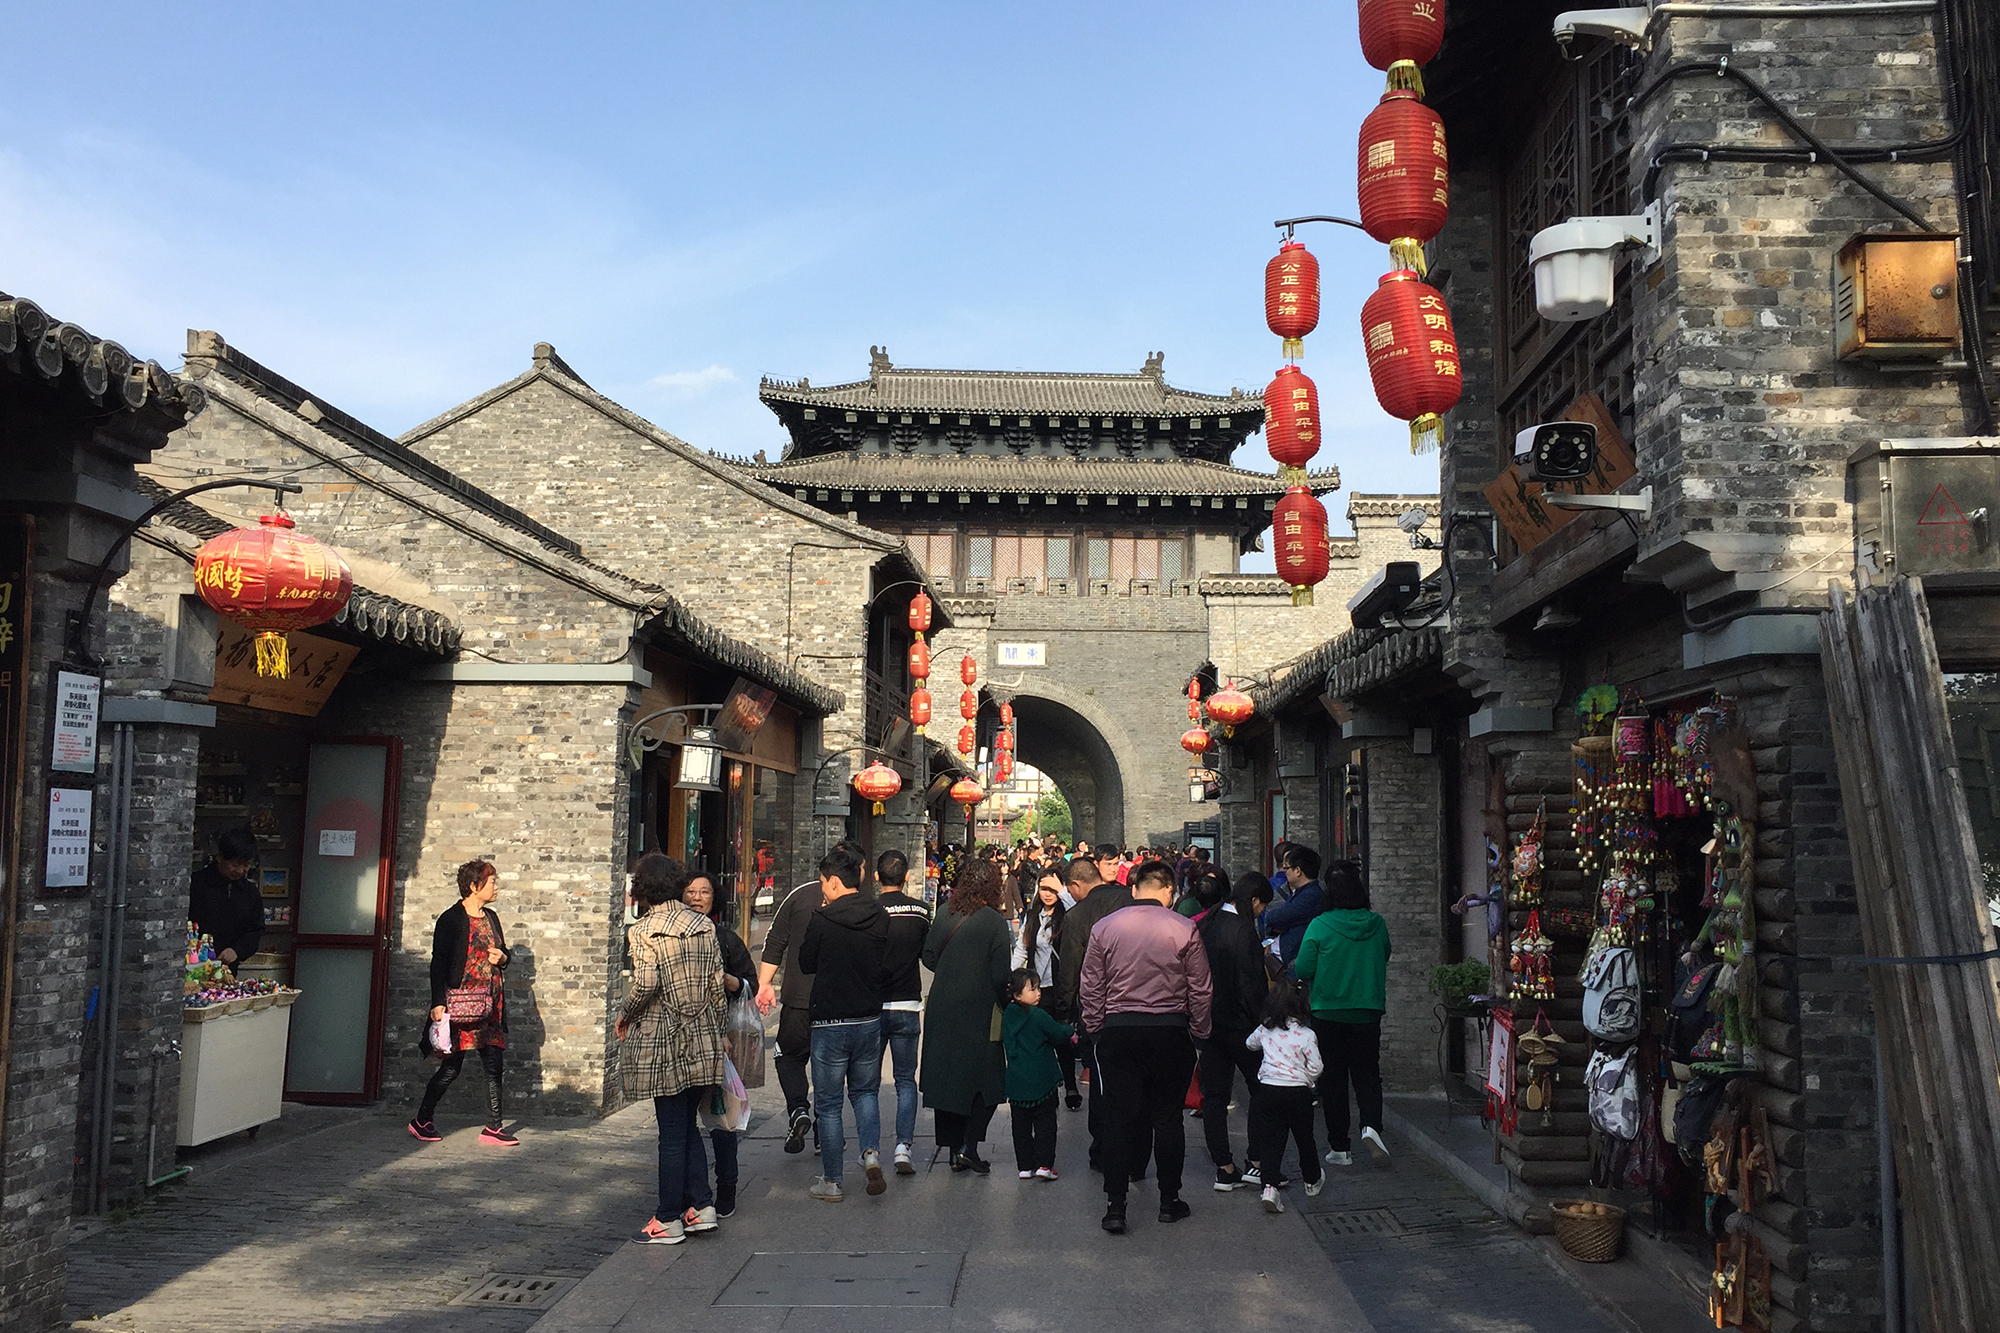 扬州旅游必去的老街 中国十大历史文化名街 与南京的夫子庙很像